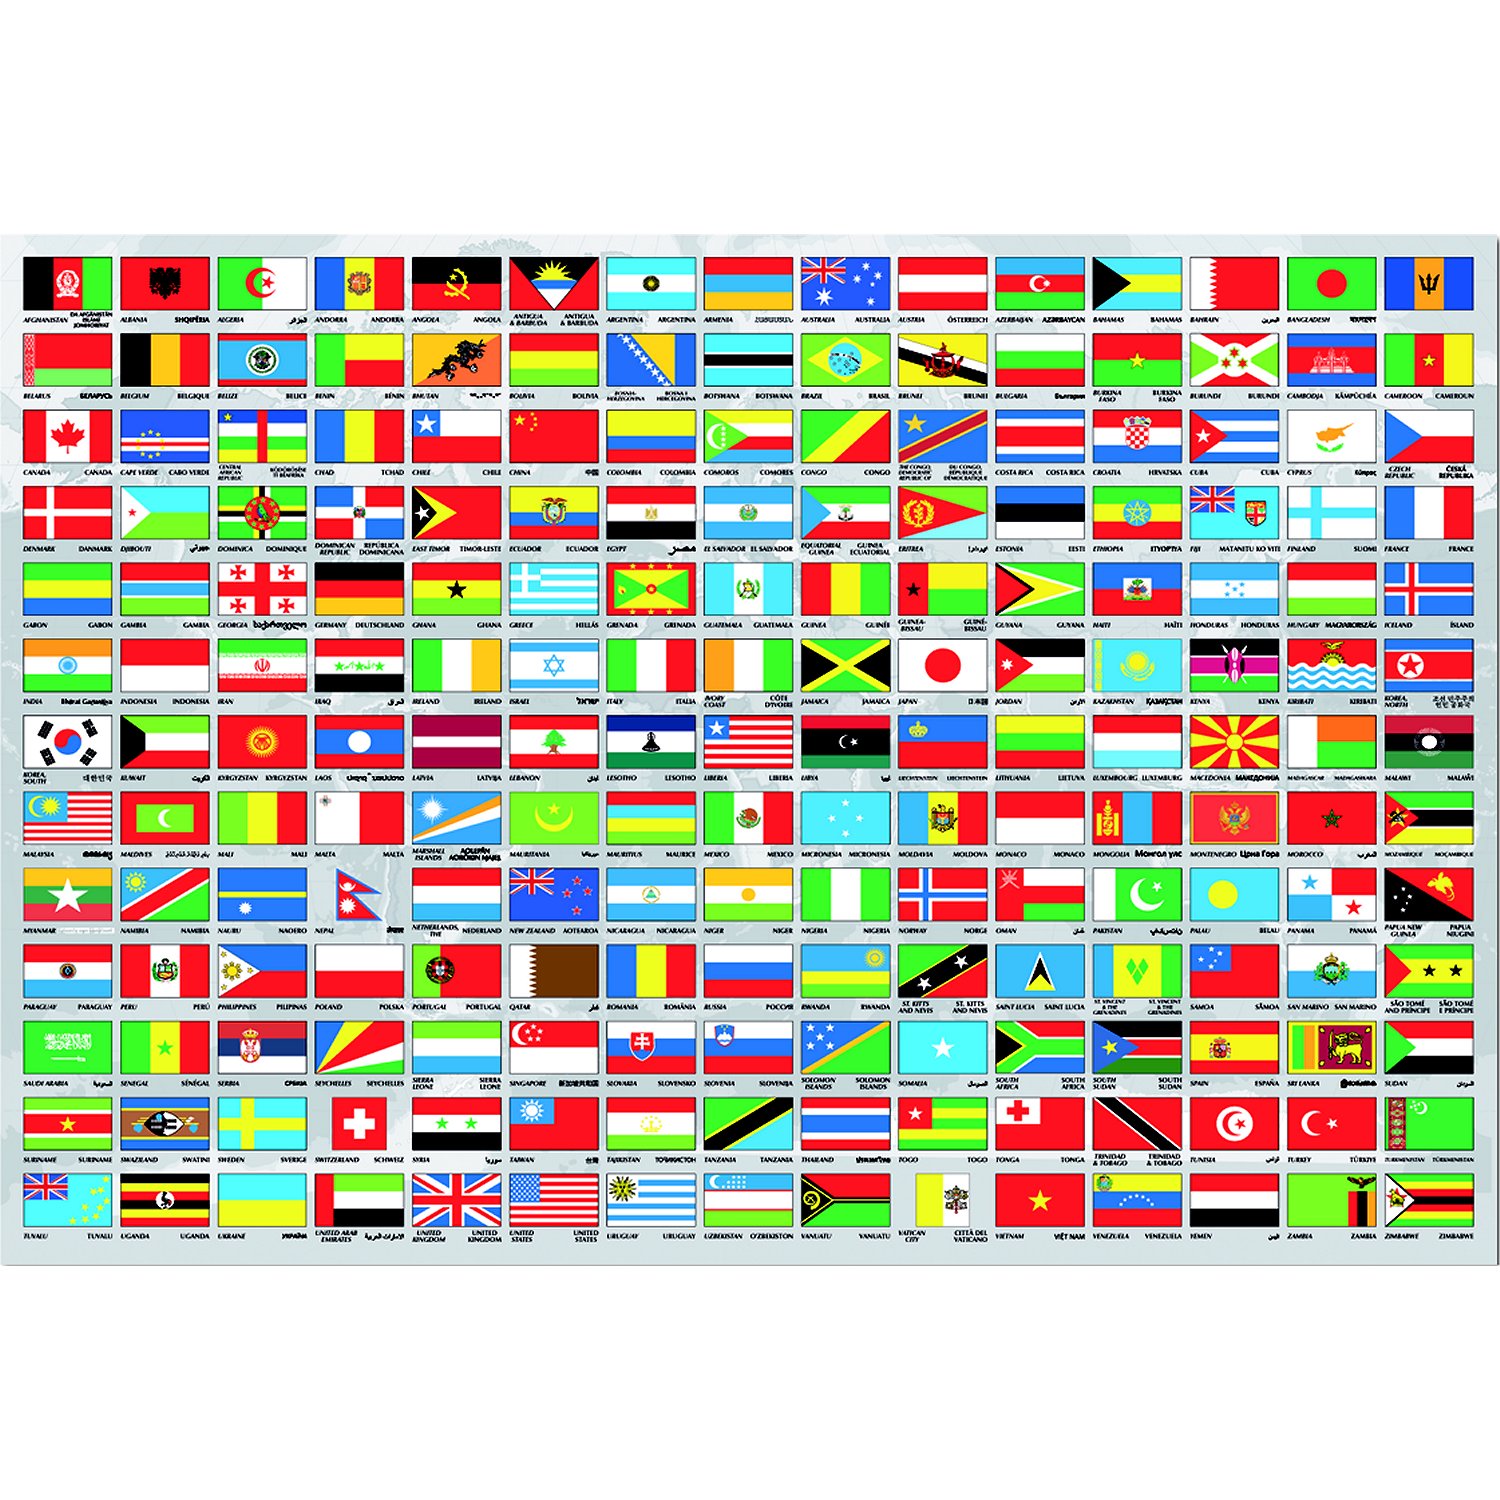 Показать флаги всех стран с названиями стран фото на русском языке